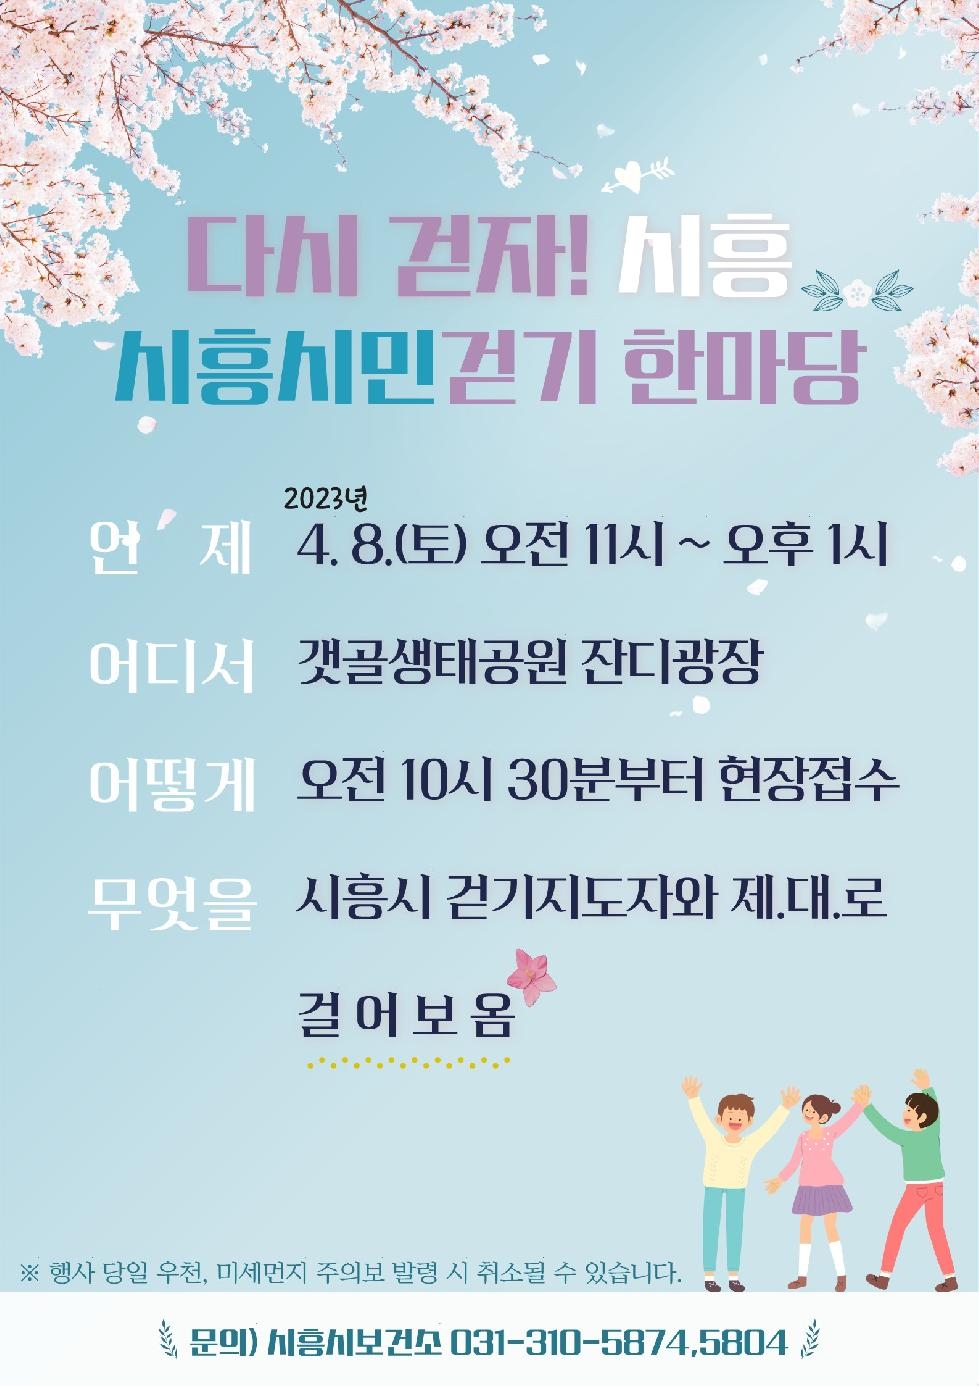 다시 걷자! 시흥!  시흥시보건소, 4월 8일 걷기 한마당 개최